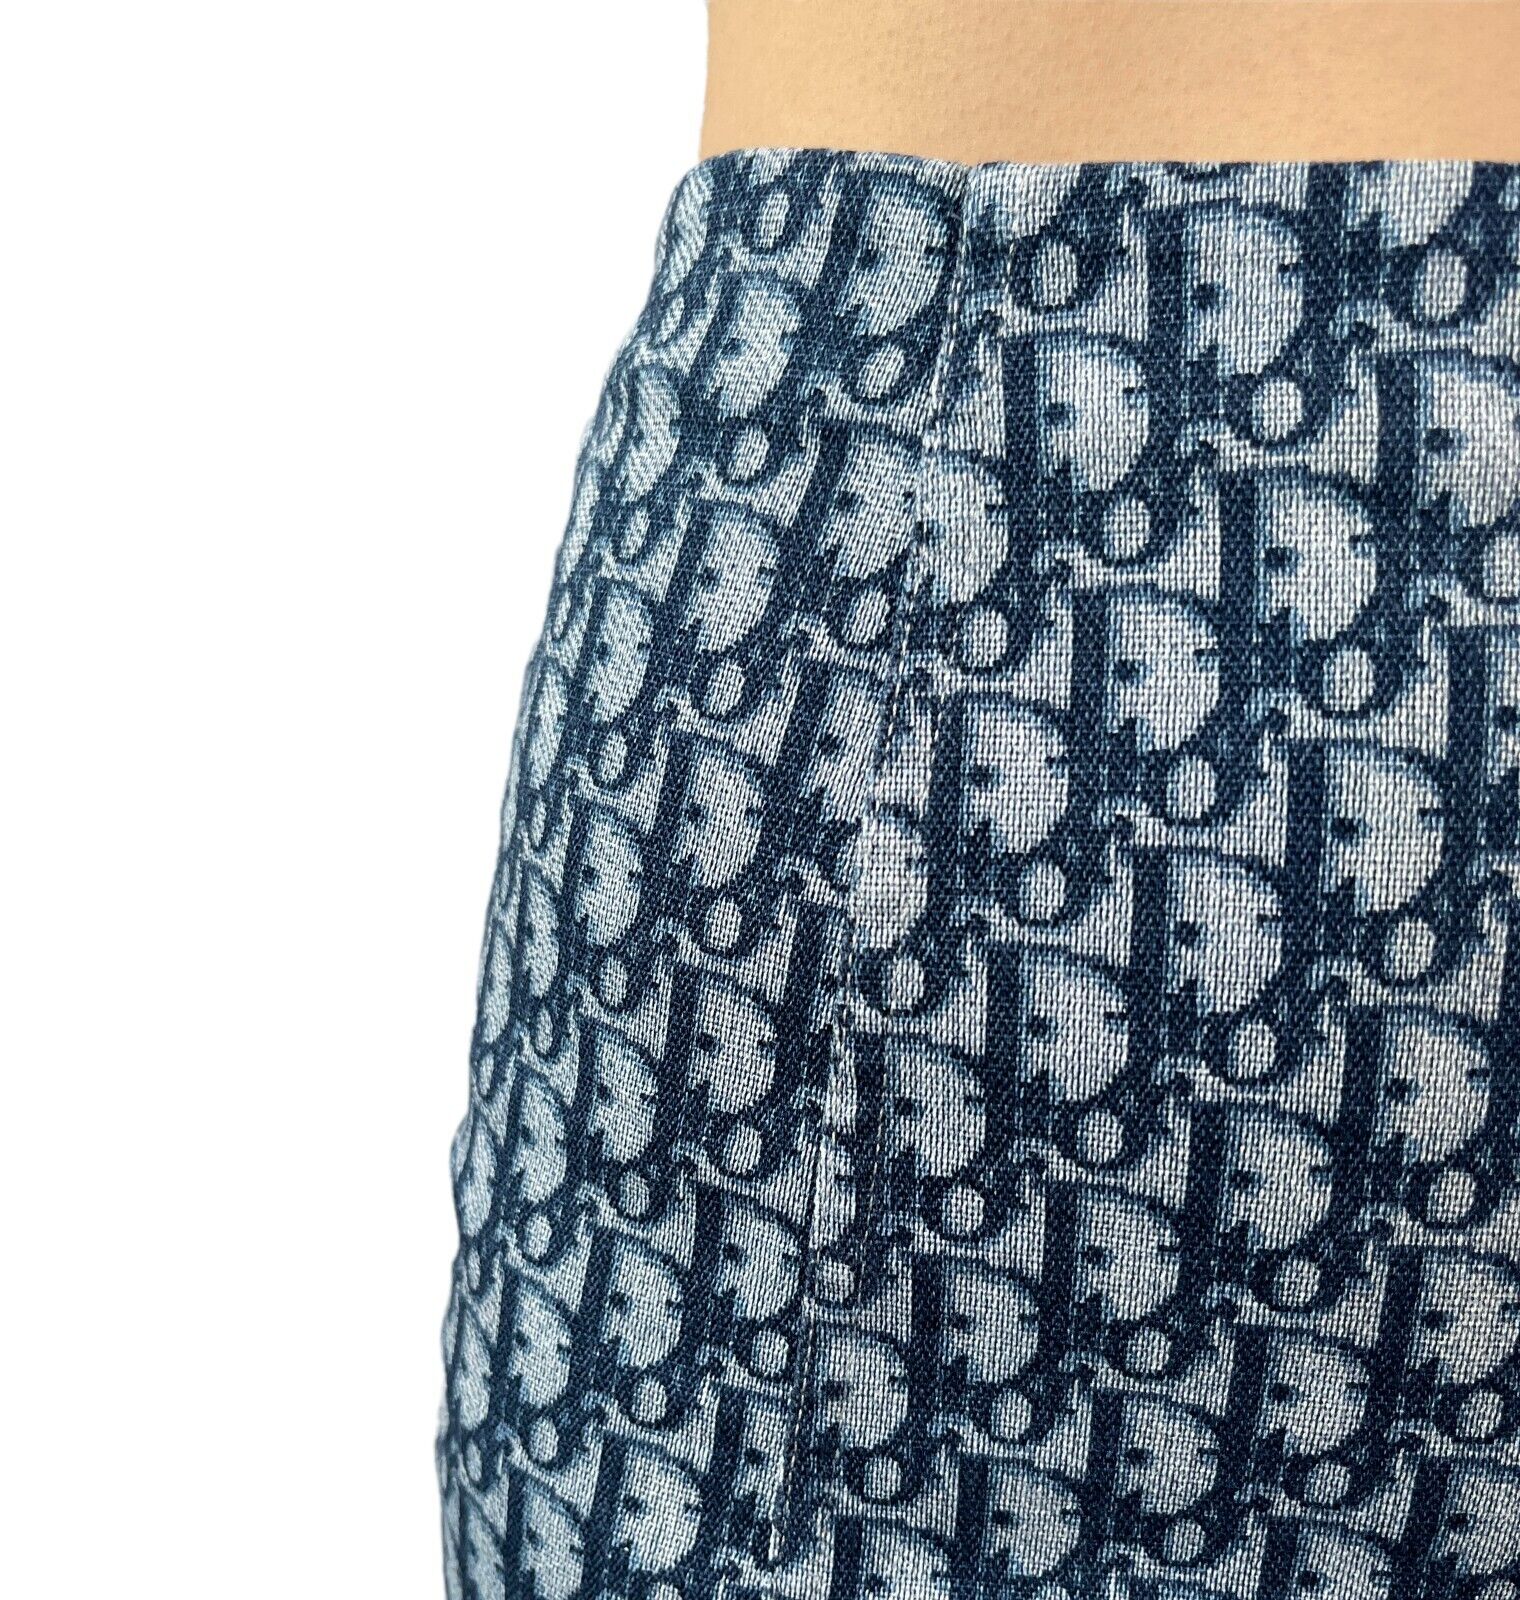 Christian Dior Vintage Trotter Monogram Skirt #38 Cotton Dark Blue Zip RankAB+